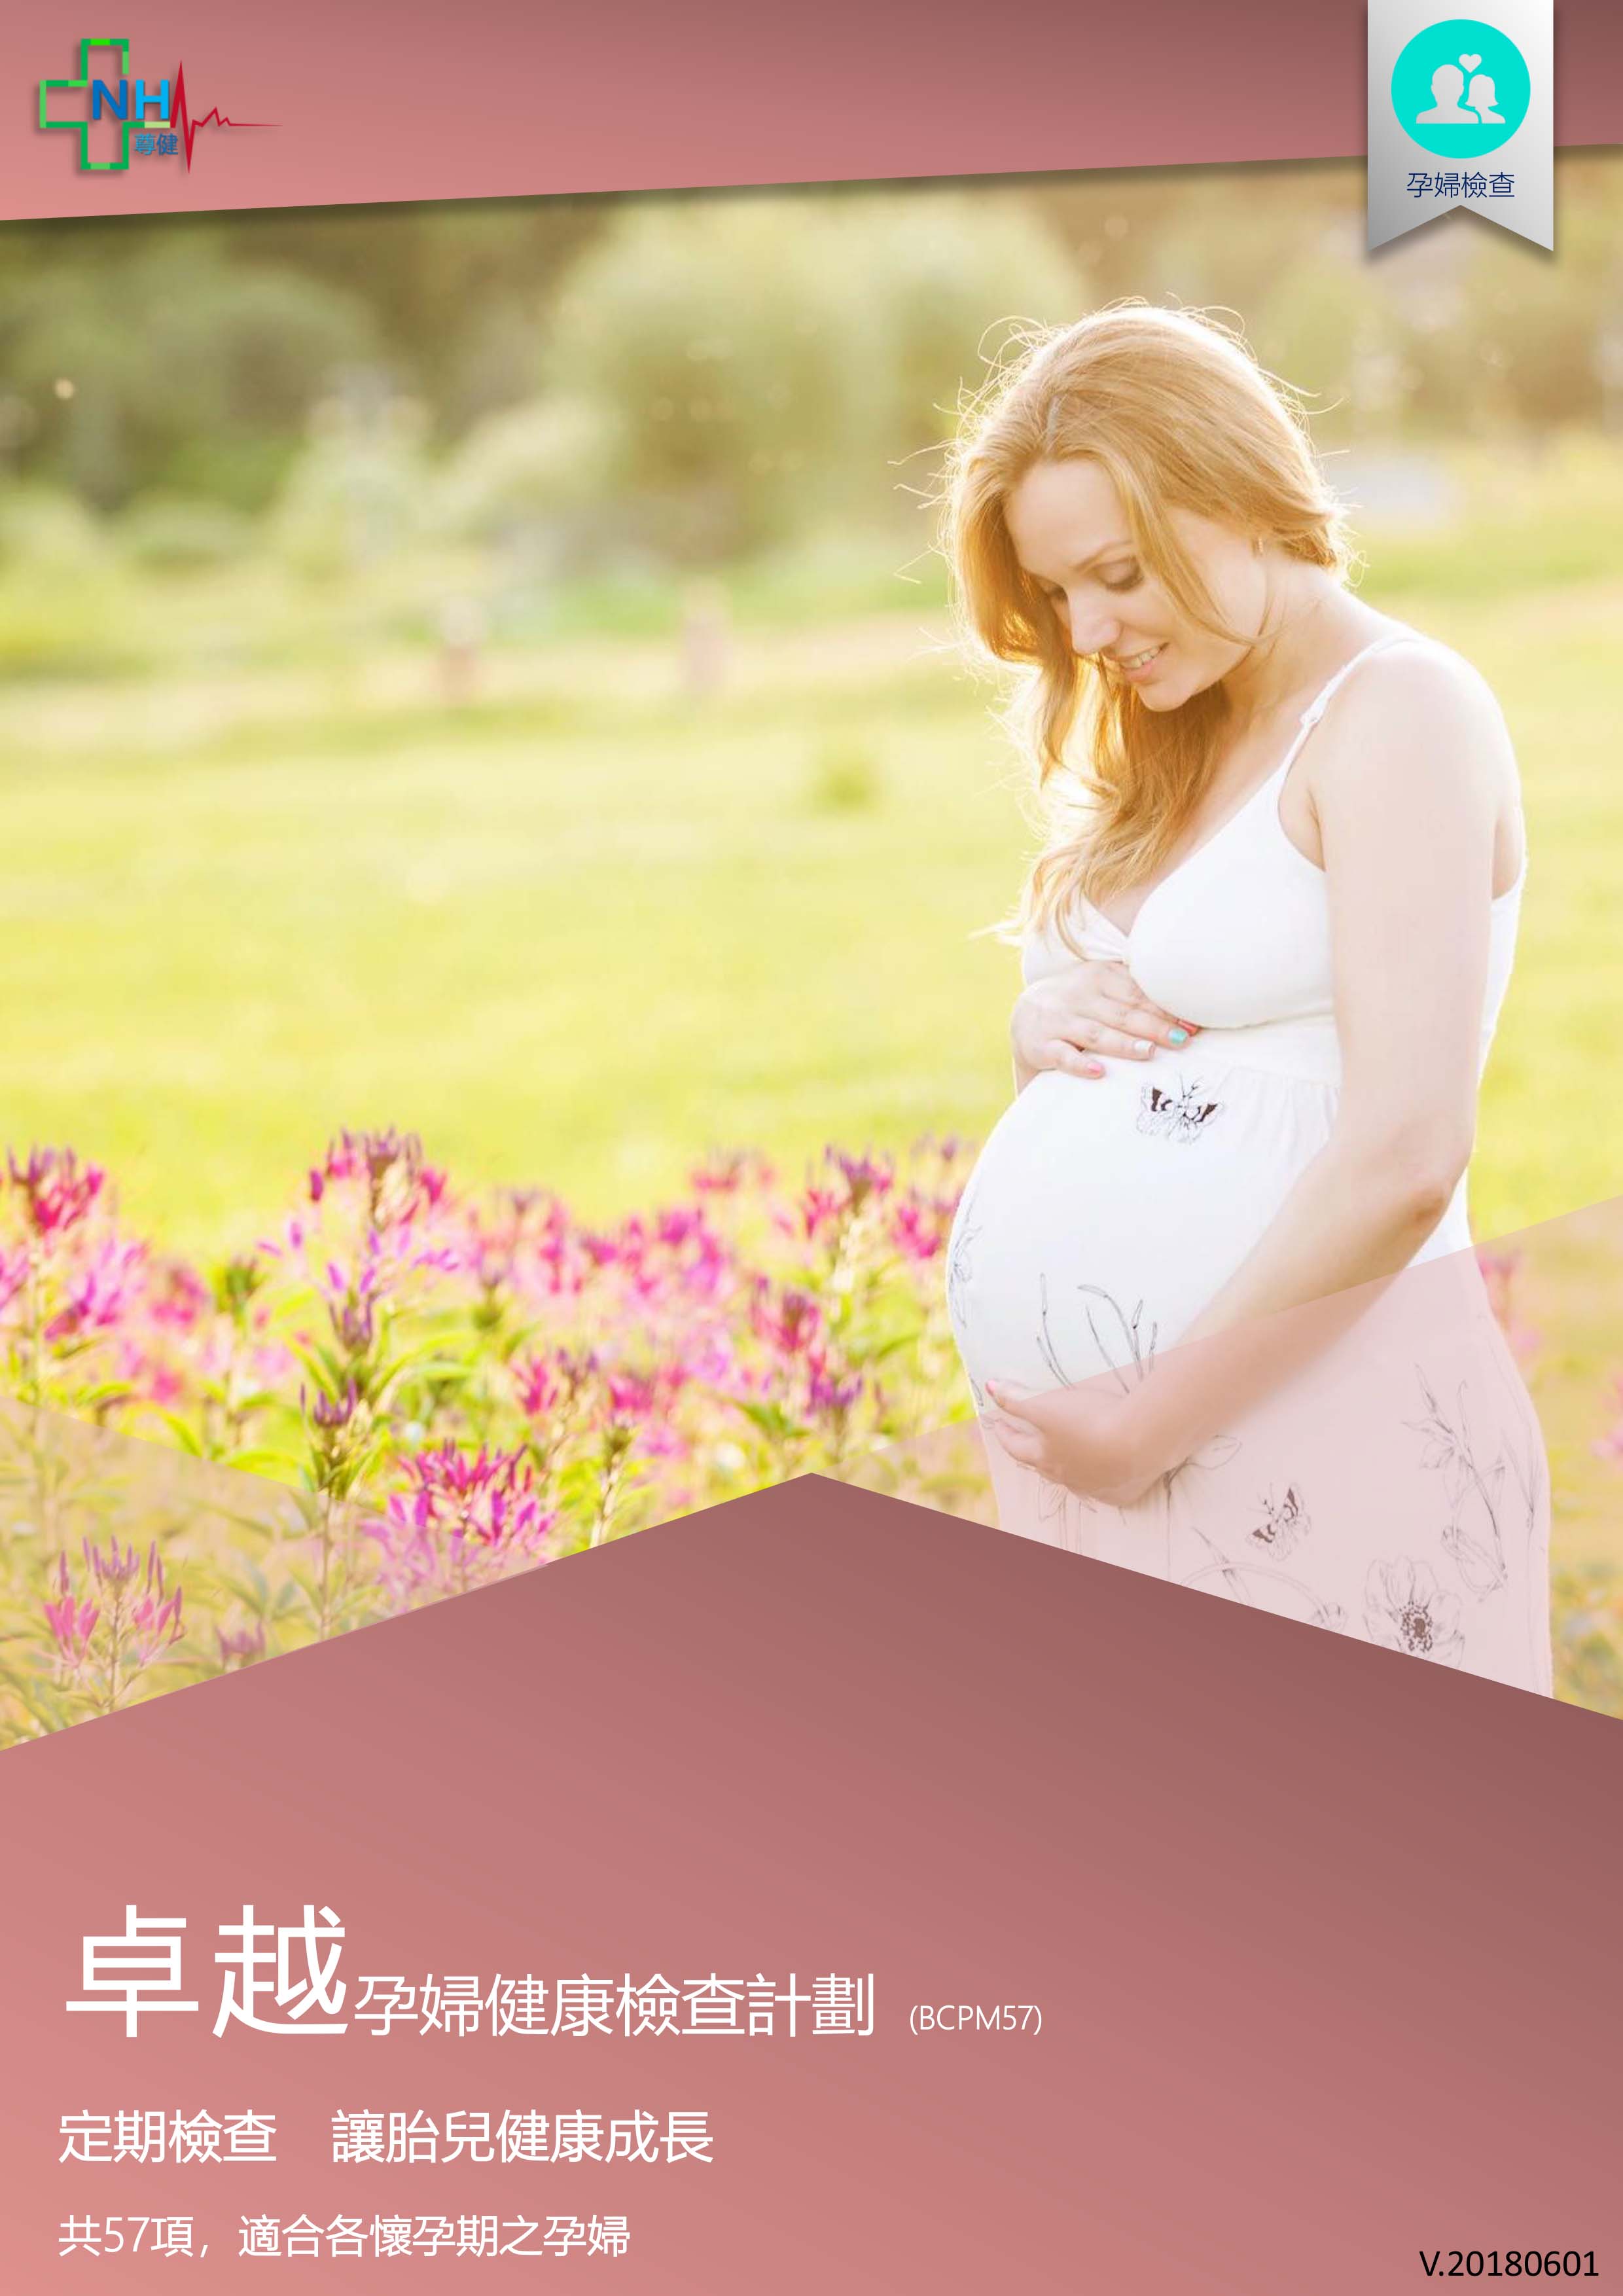 2l-pregnant-women-detail-check-1.jpg